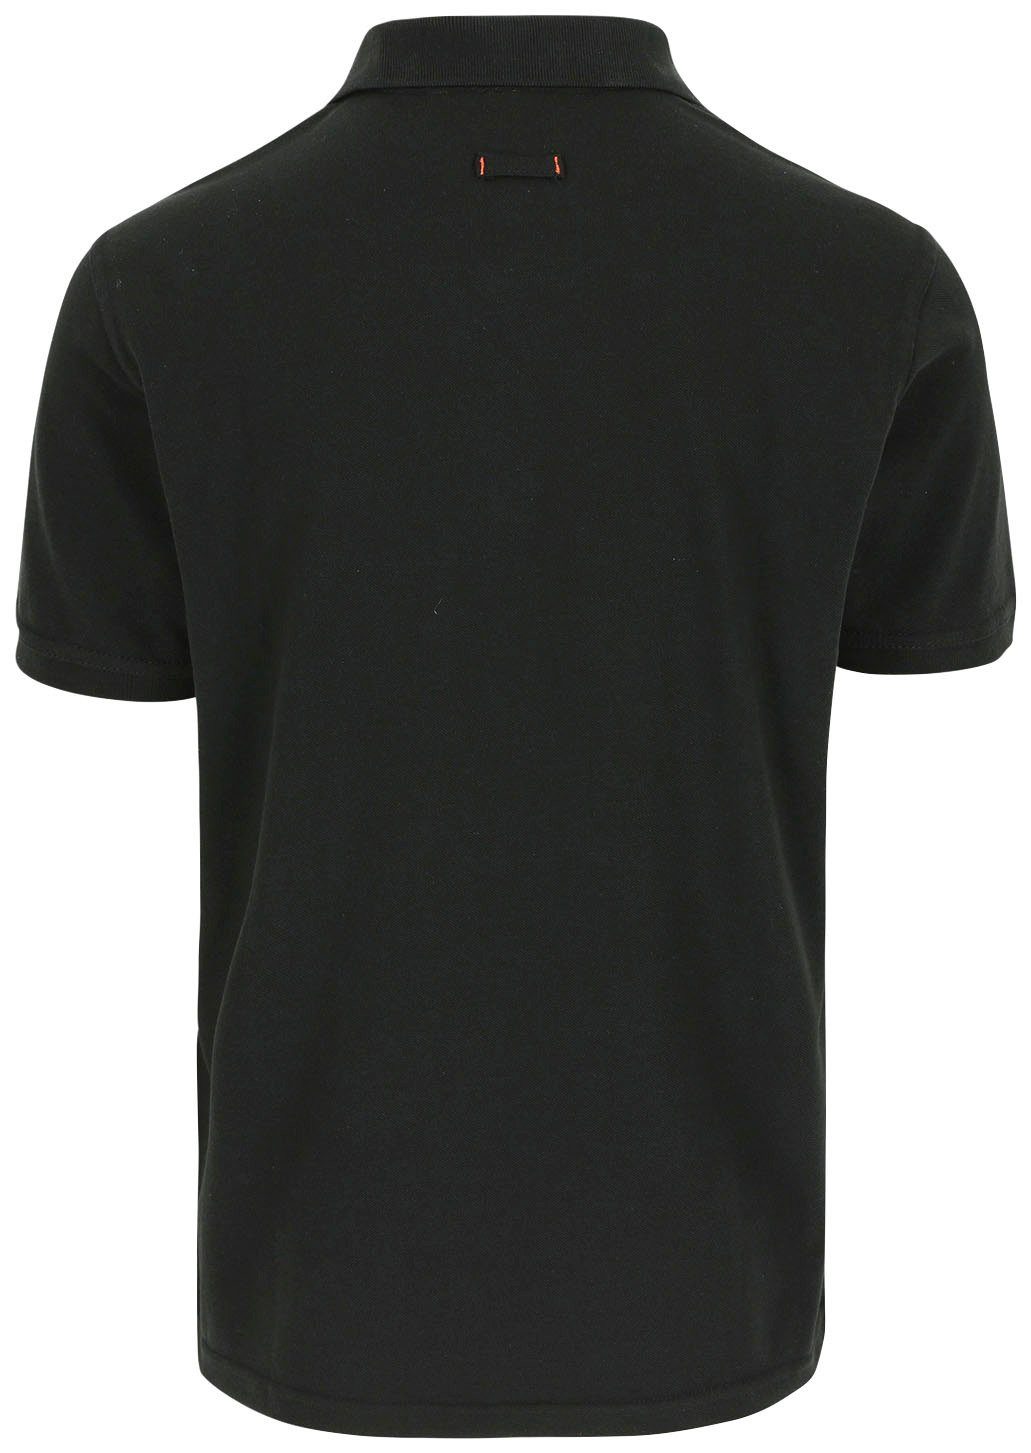 Farben schwarz Bündchen, 1 Brusttasche, verschiedene Poloshirt Rippstrick-Kragen Polohemd Herock Leo und Kurzärmlig